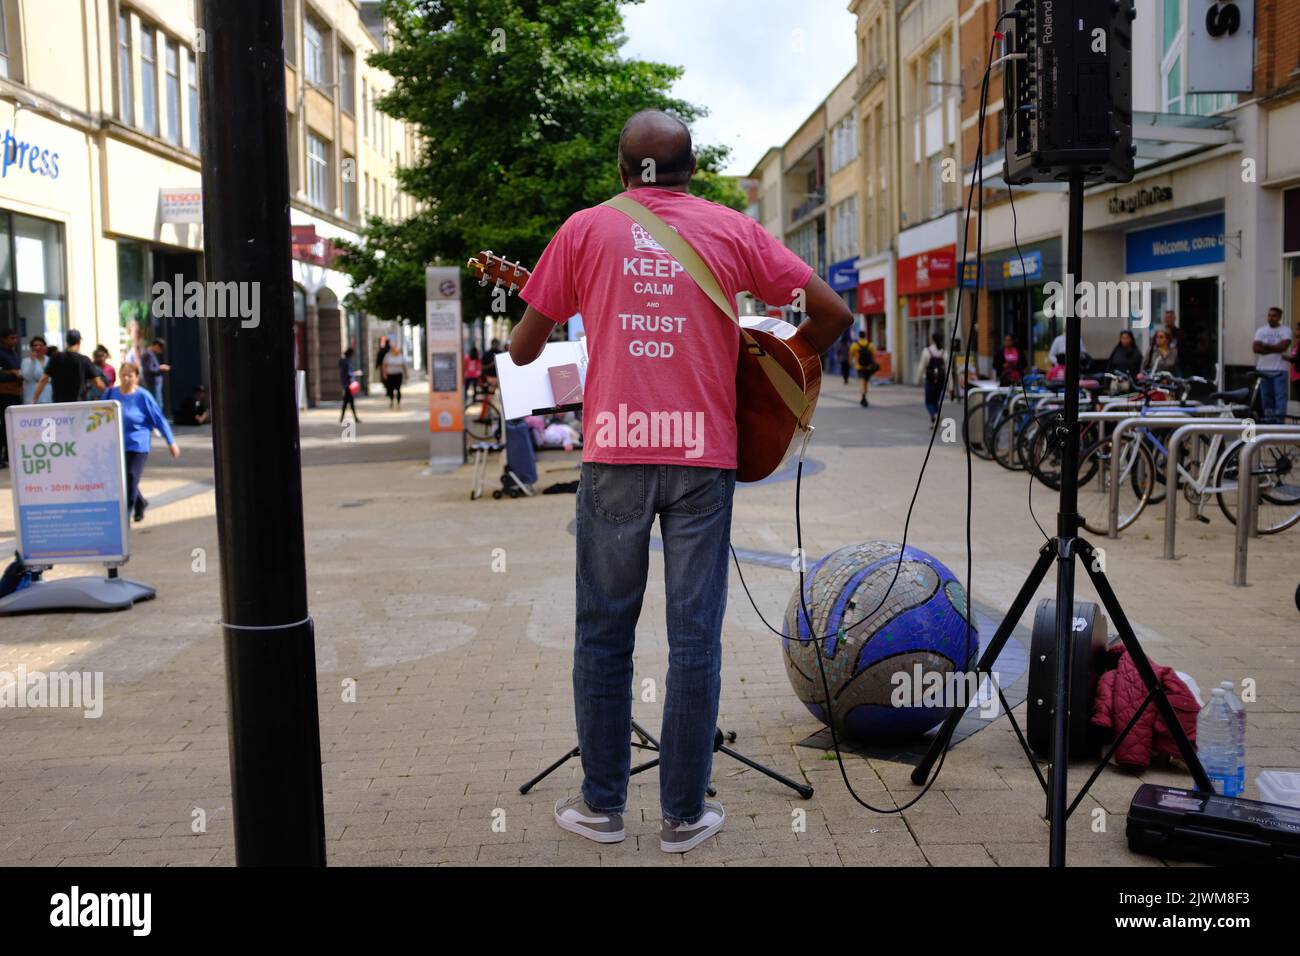 Un cristiano del sur de la India cantando y tocando la guitarra en el centro comercial Broadmead en Bristol, Reino Unido, con una camiseta 'Mantenga la calma y la confianza en dios' Foto de stock